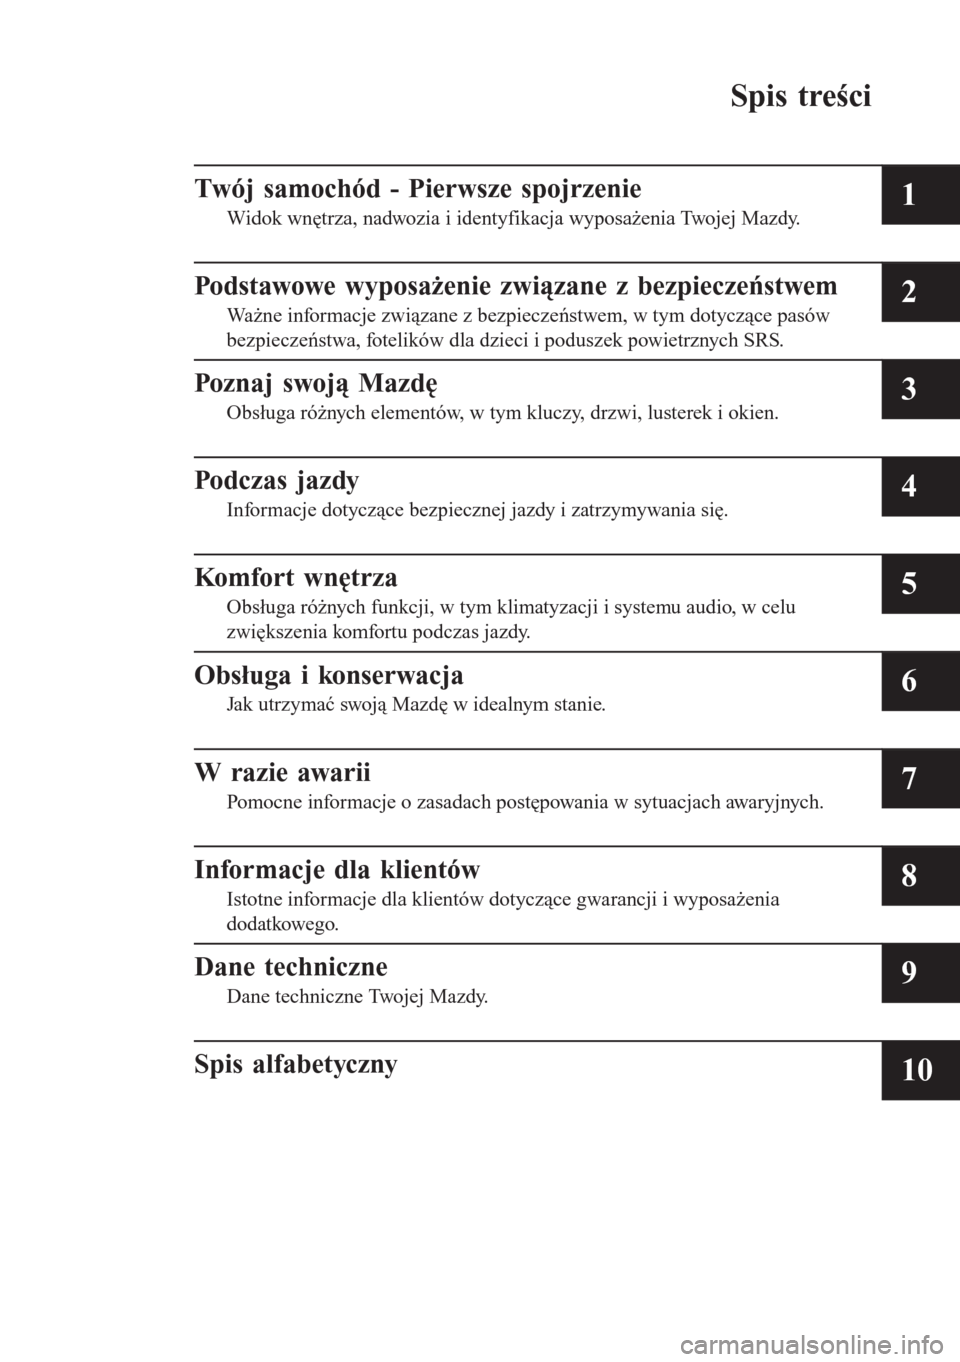 MAZDA MODEL CX-3 2016  Instrukcja Obsługi (in Polish) Spis treści
Twój samochód - Pierwsze spojrzenie
Widok wnętrza, nadwozia i identyfikacja wyposażenia Twojej Mazdy.1
Podstawowe wyposażenie związane z bezpieczeństwem
Ważne informacje związane